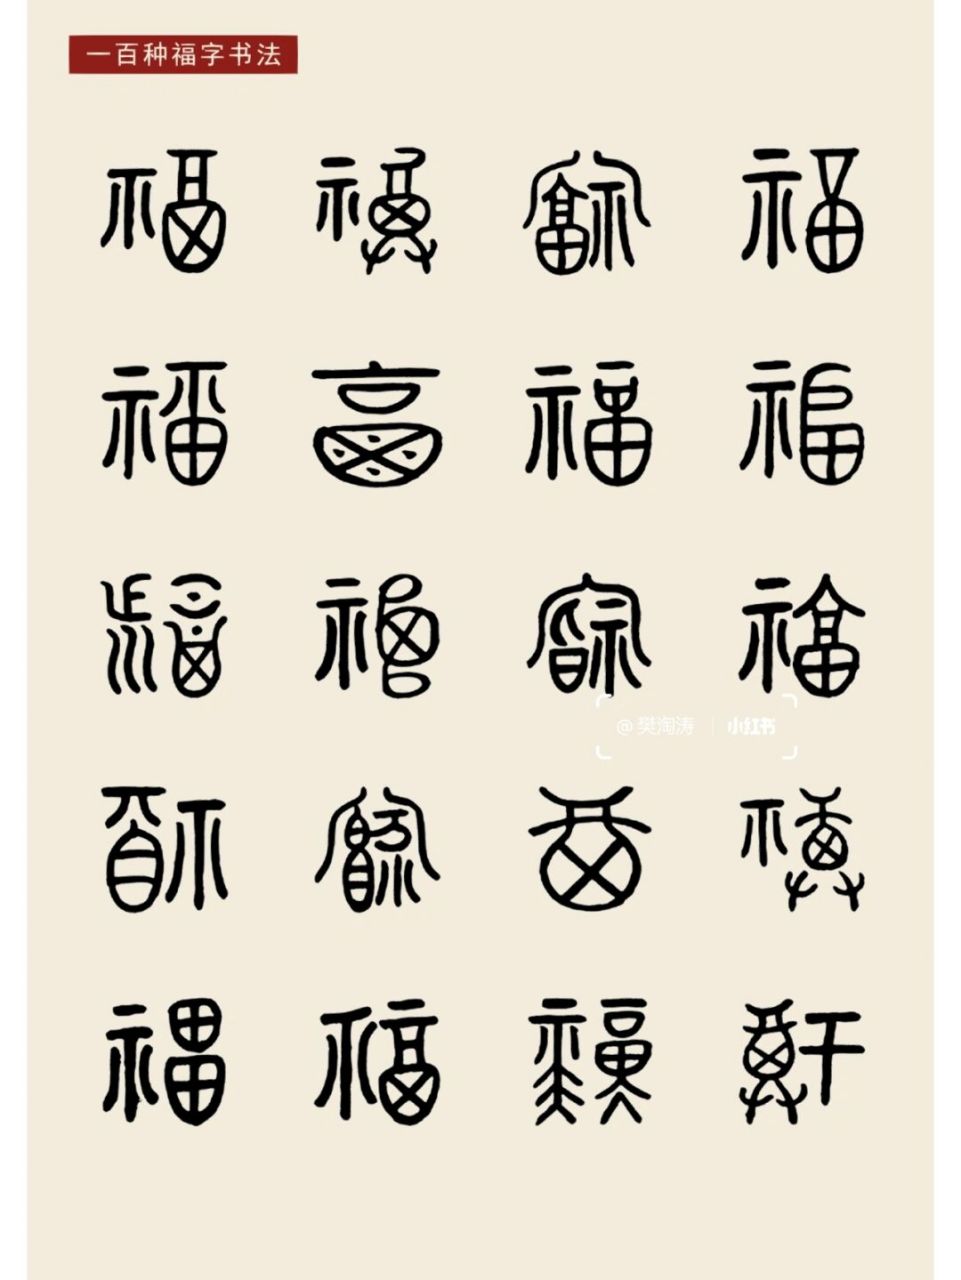 福字纹9899 94起源: 福字图案早在原始社会就有相关图形创造